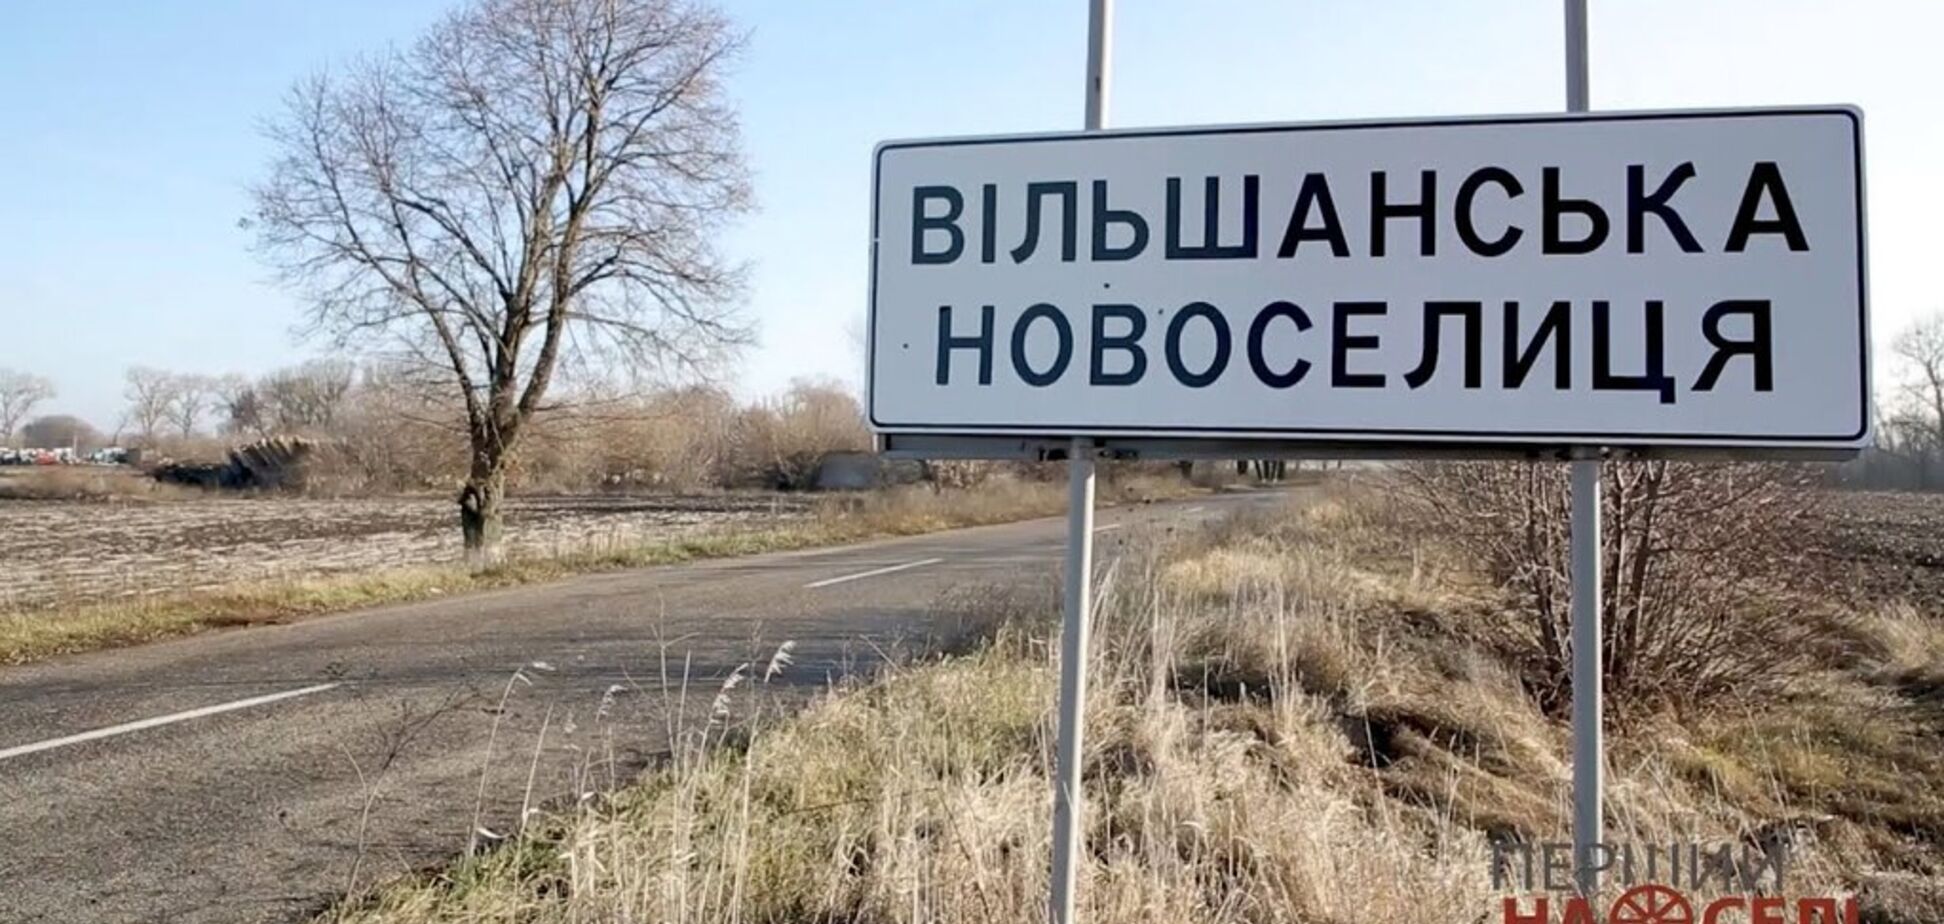 В селе Ольшанская Новоселица в Киевской области запустили бесплатную маршрутку